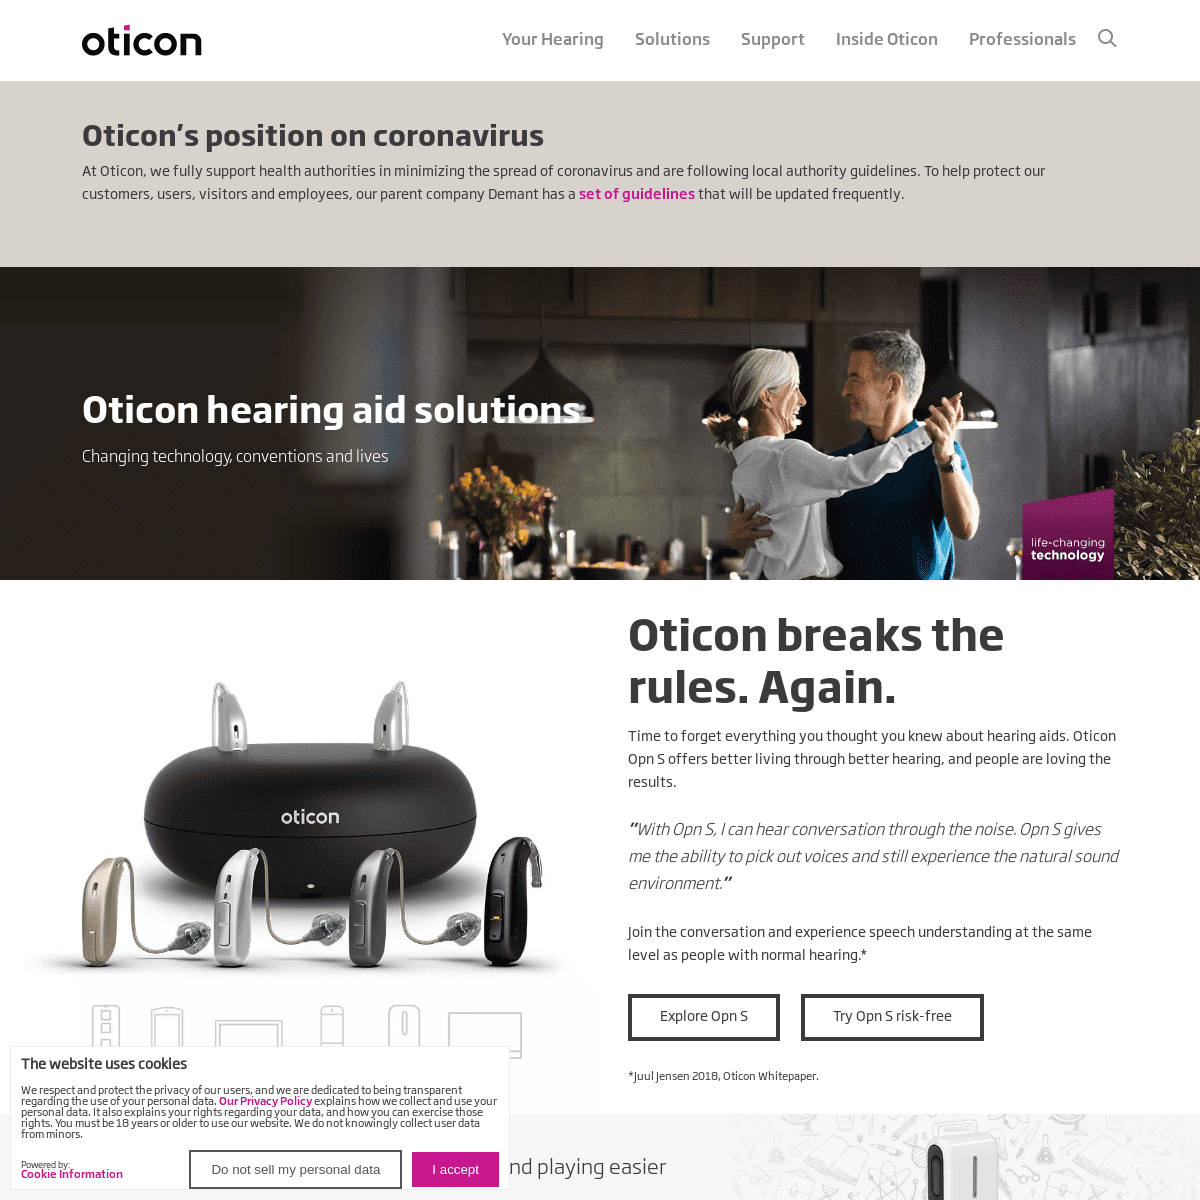 A complete backup of oticon.com